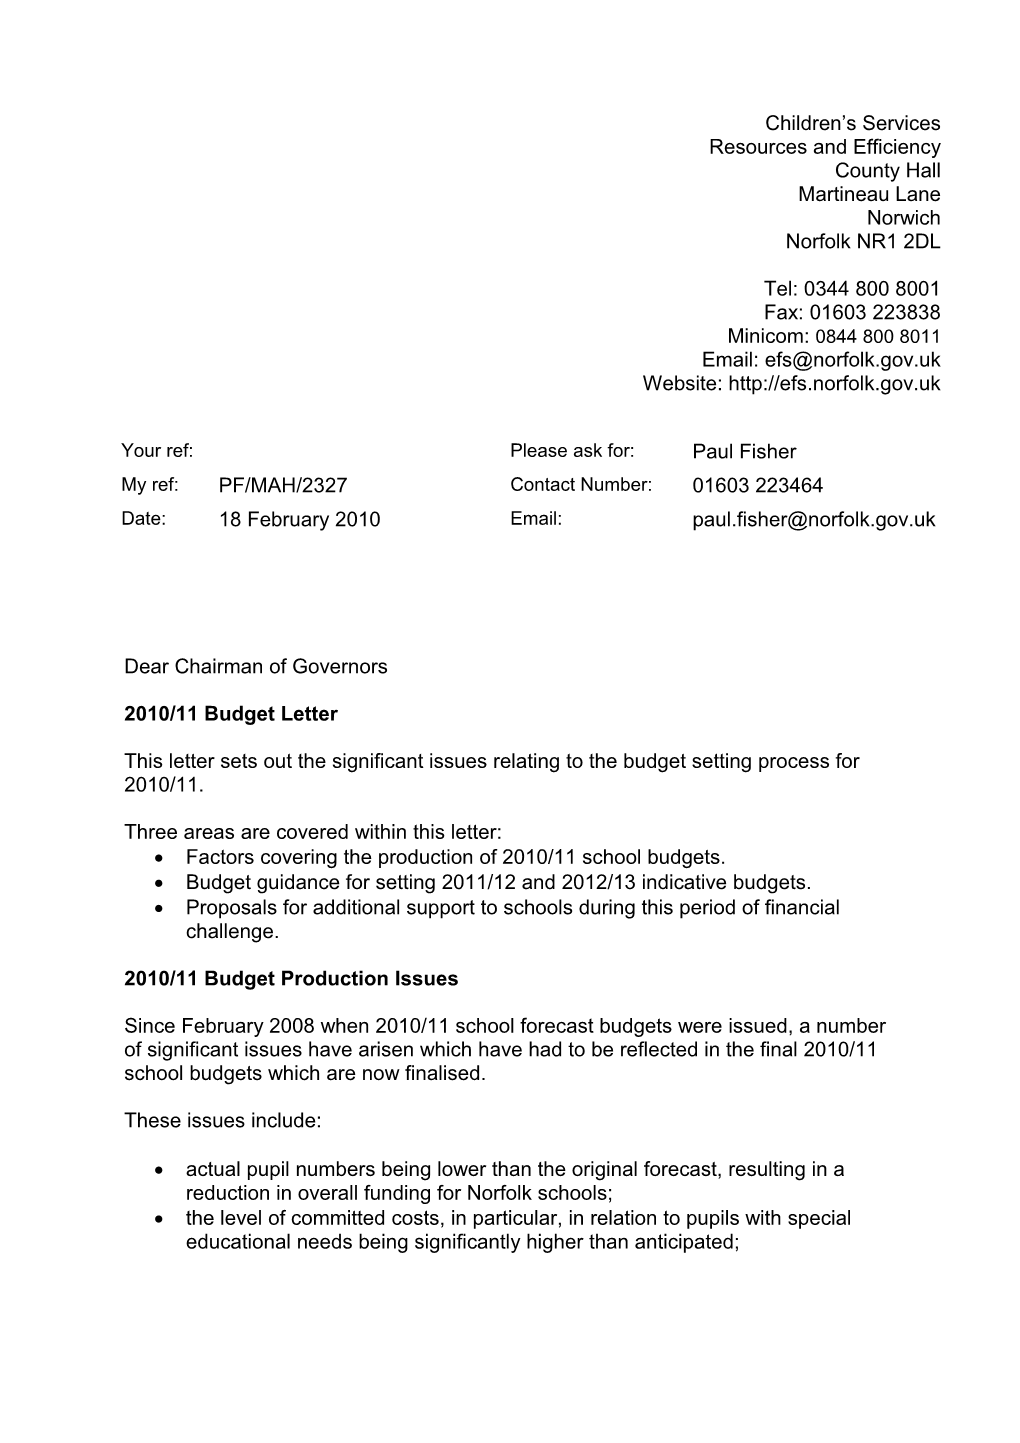 2010/11 Budget Letter